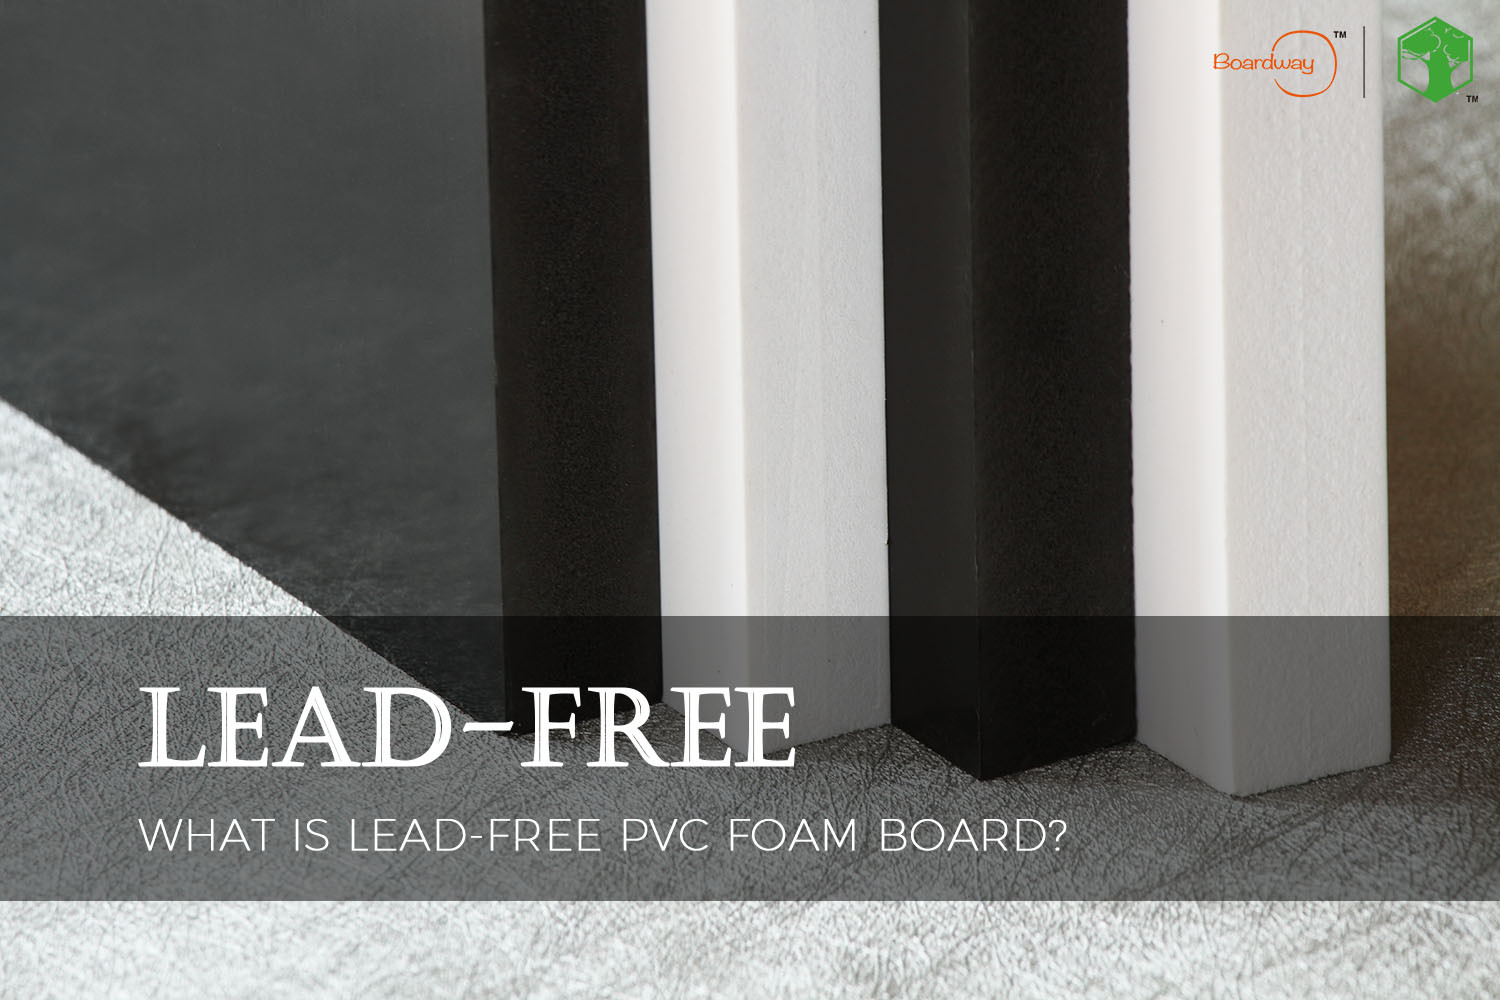 Lead-Free PVC Foam Board